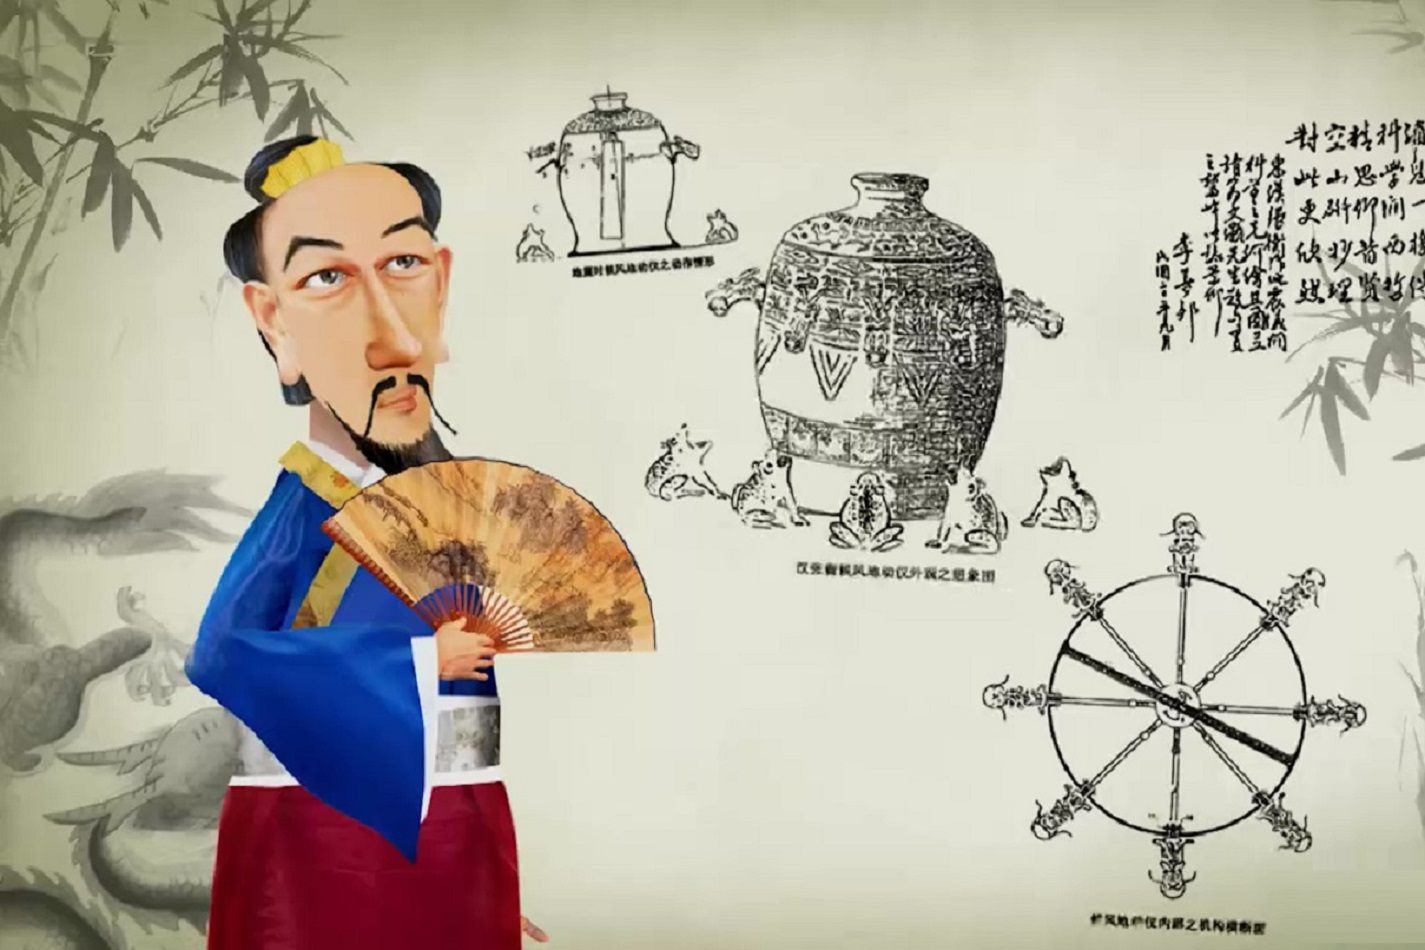 Animação mostra como o inventor chinês Zhang Heng desenvolveu o sismógrafo